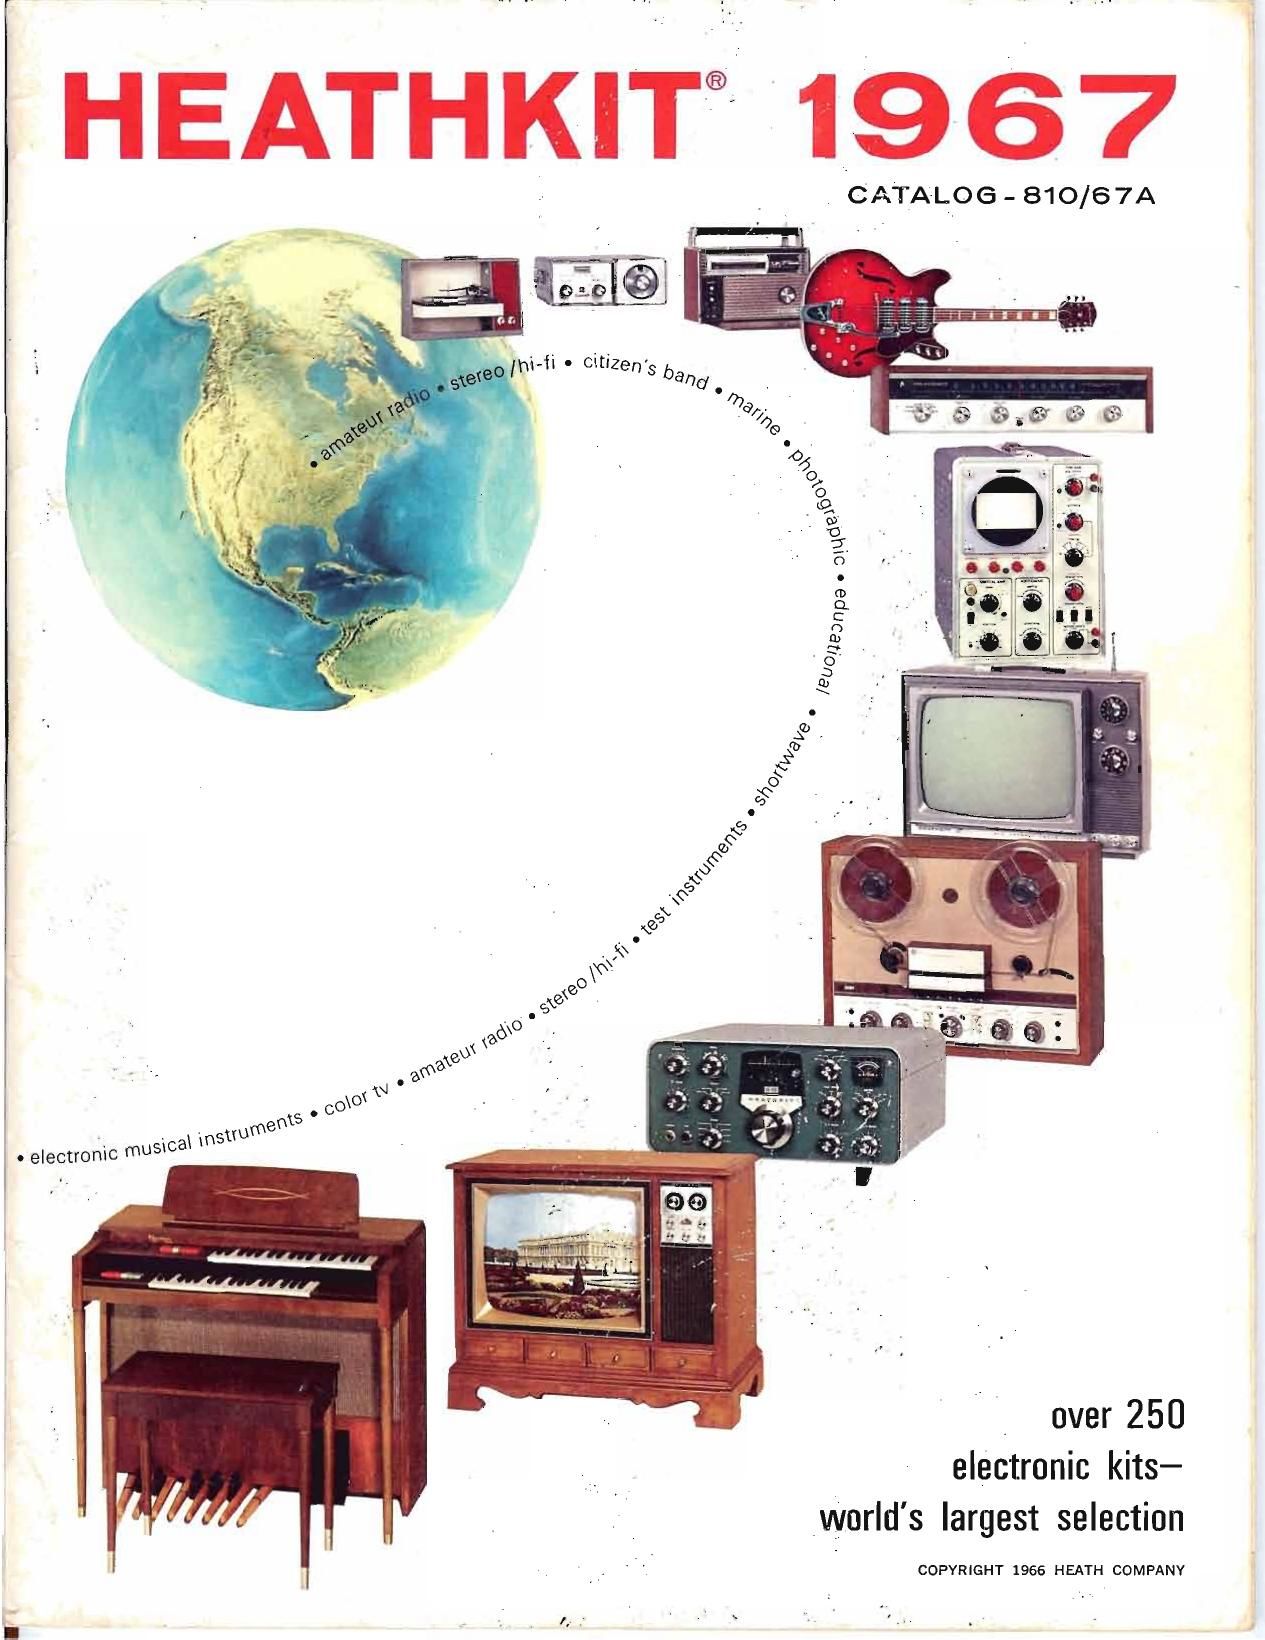 Heathkit 1967 Catalog